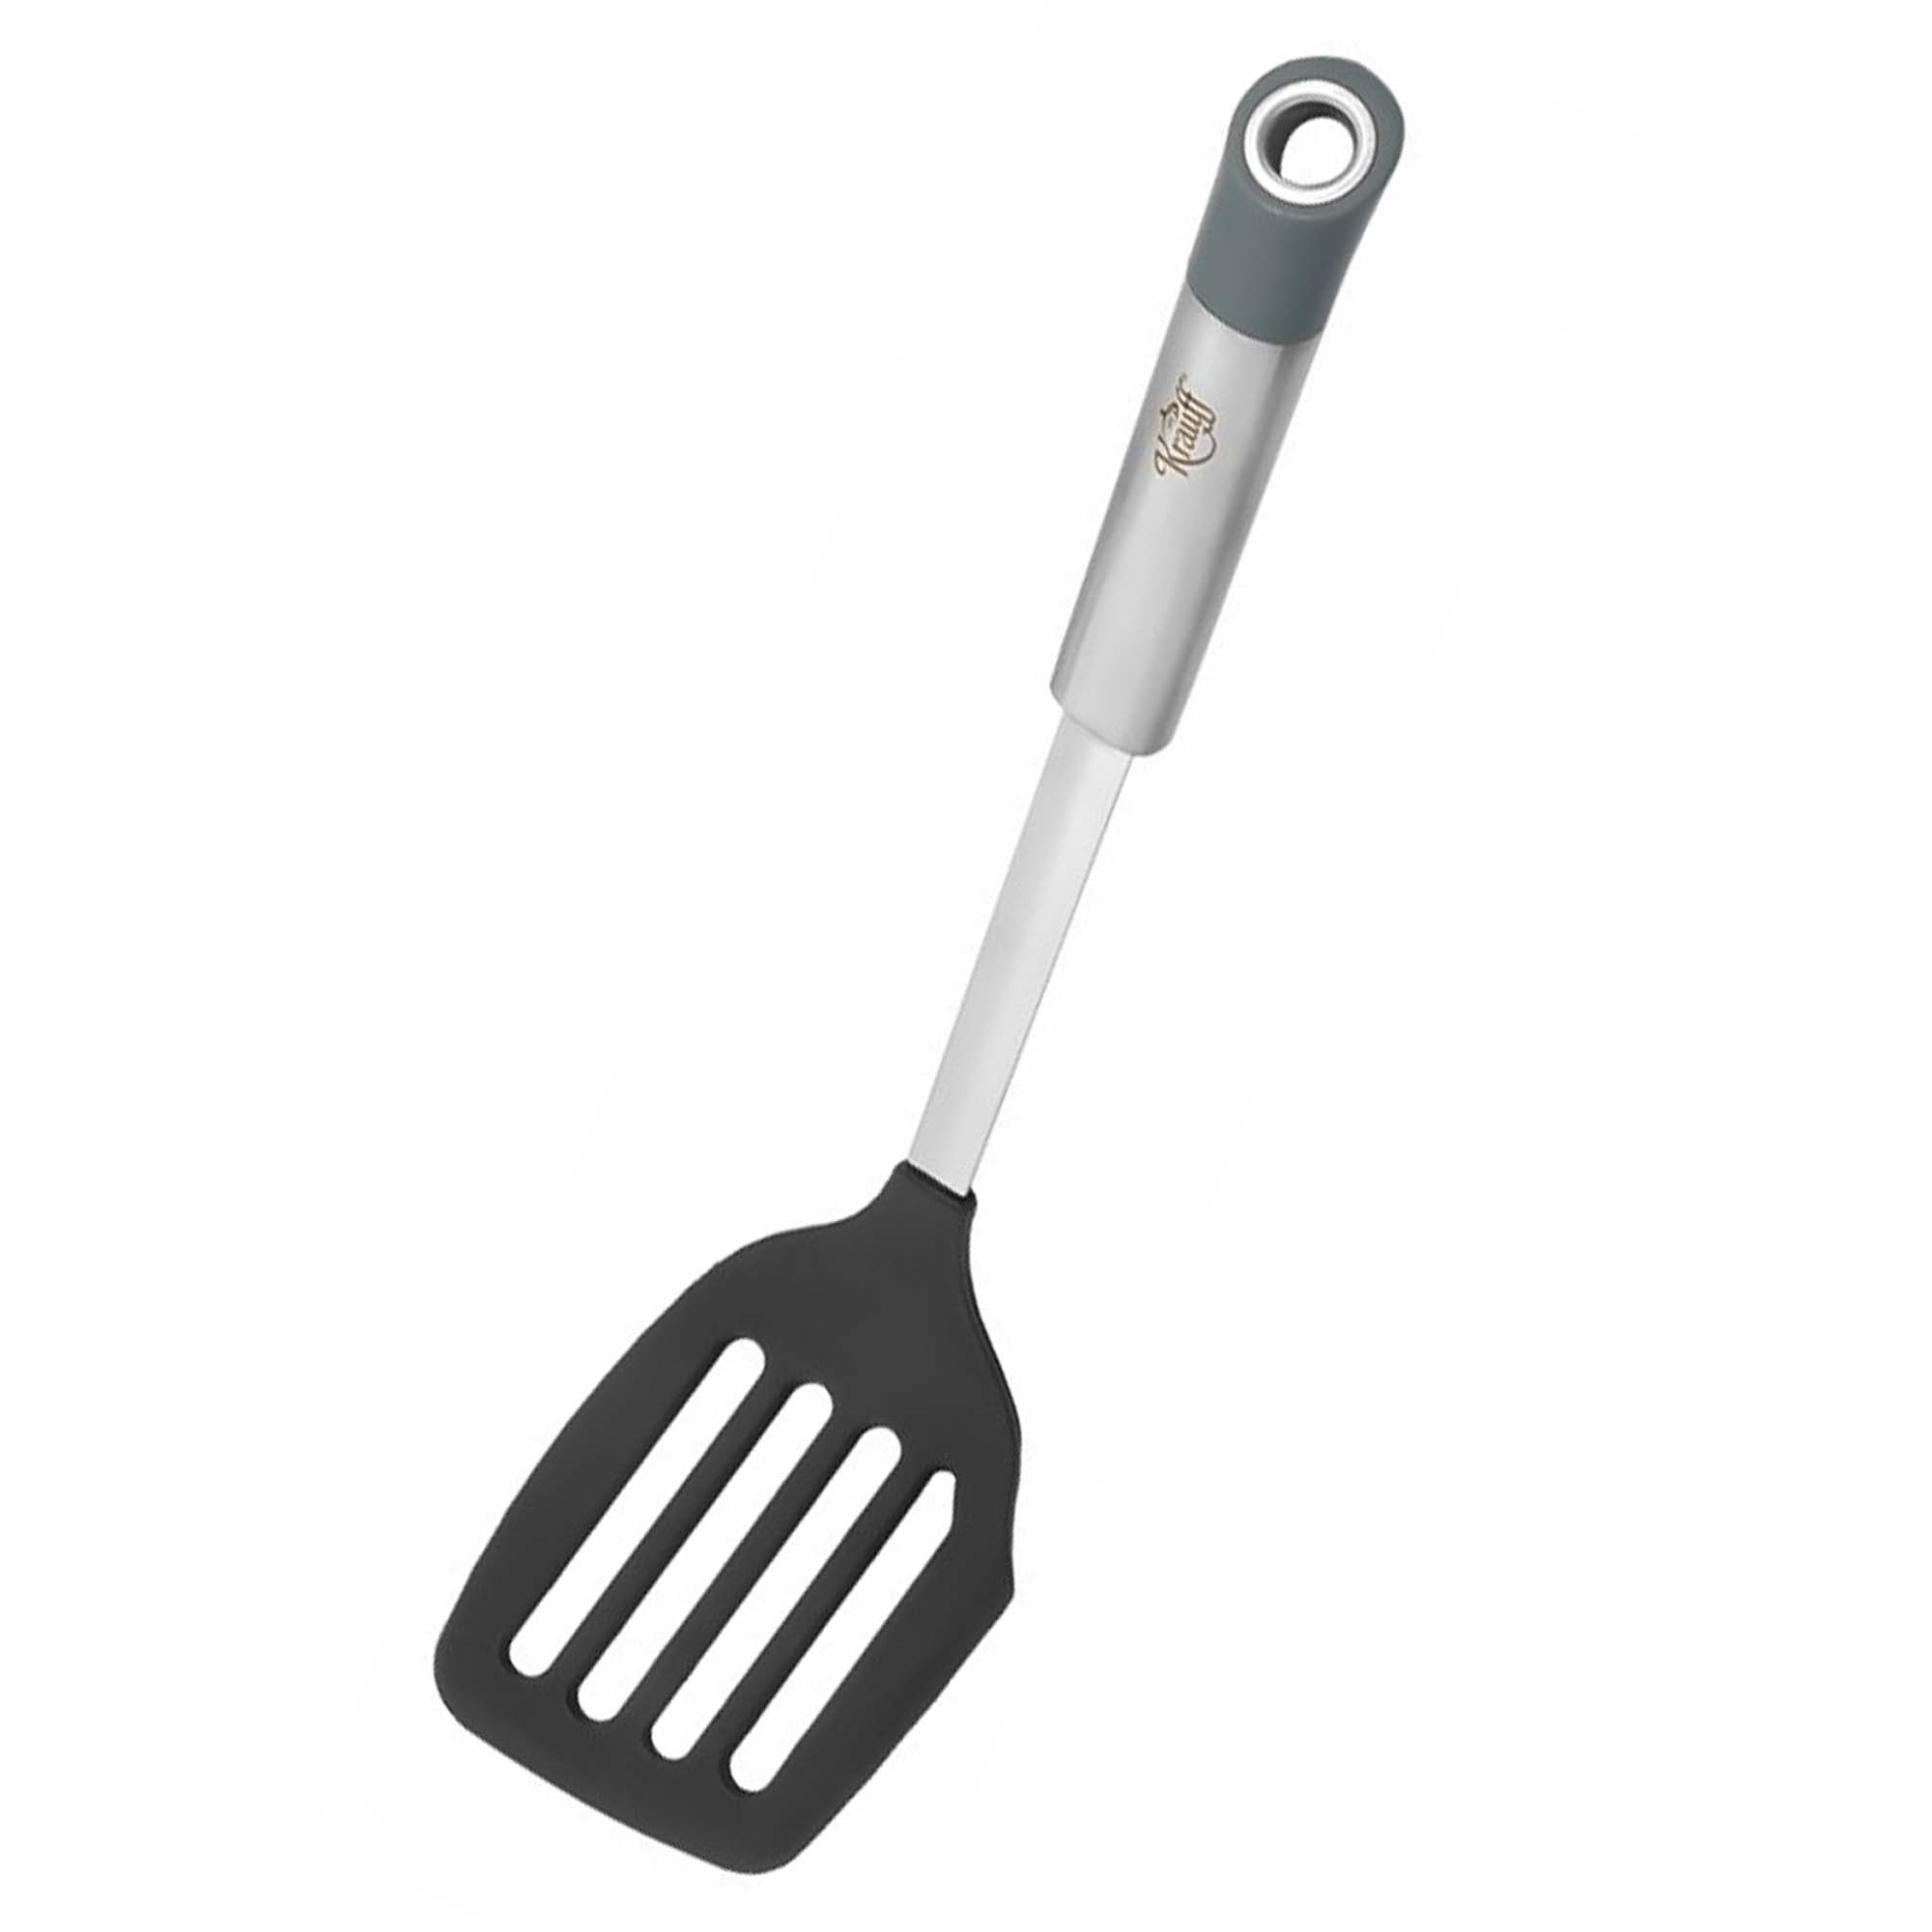 Gericht kitchen tool set